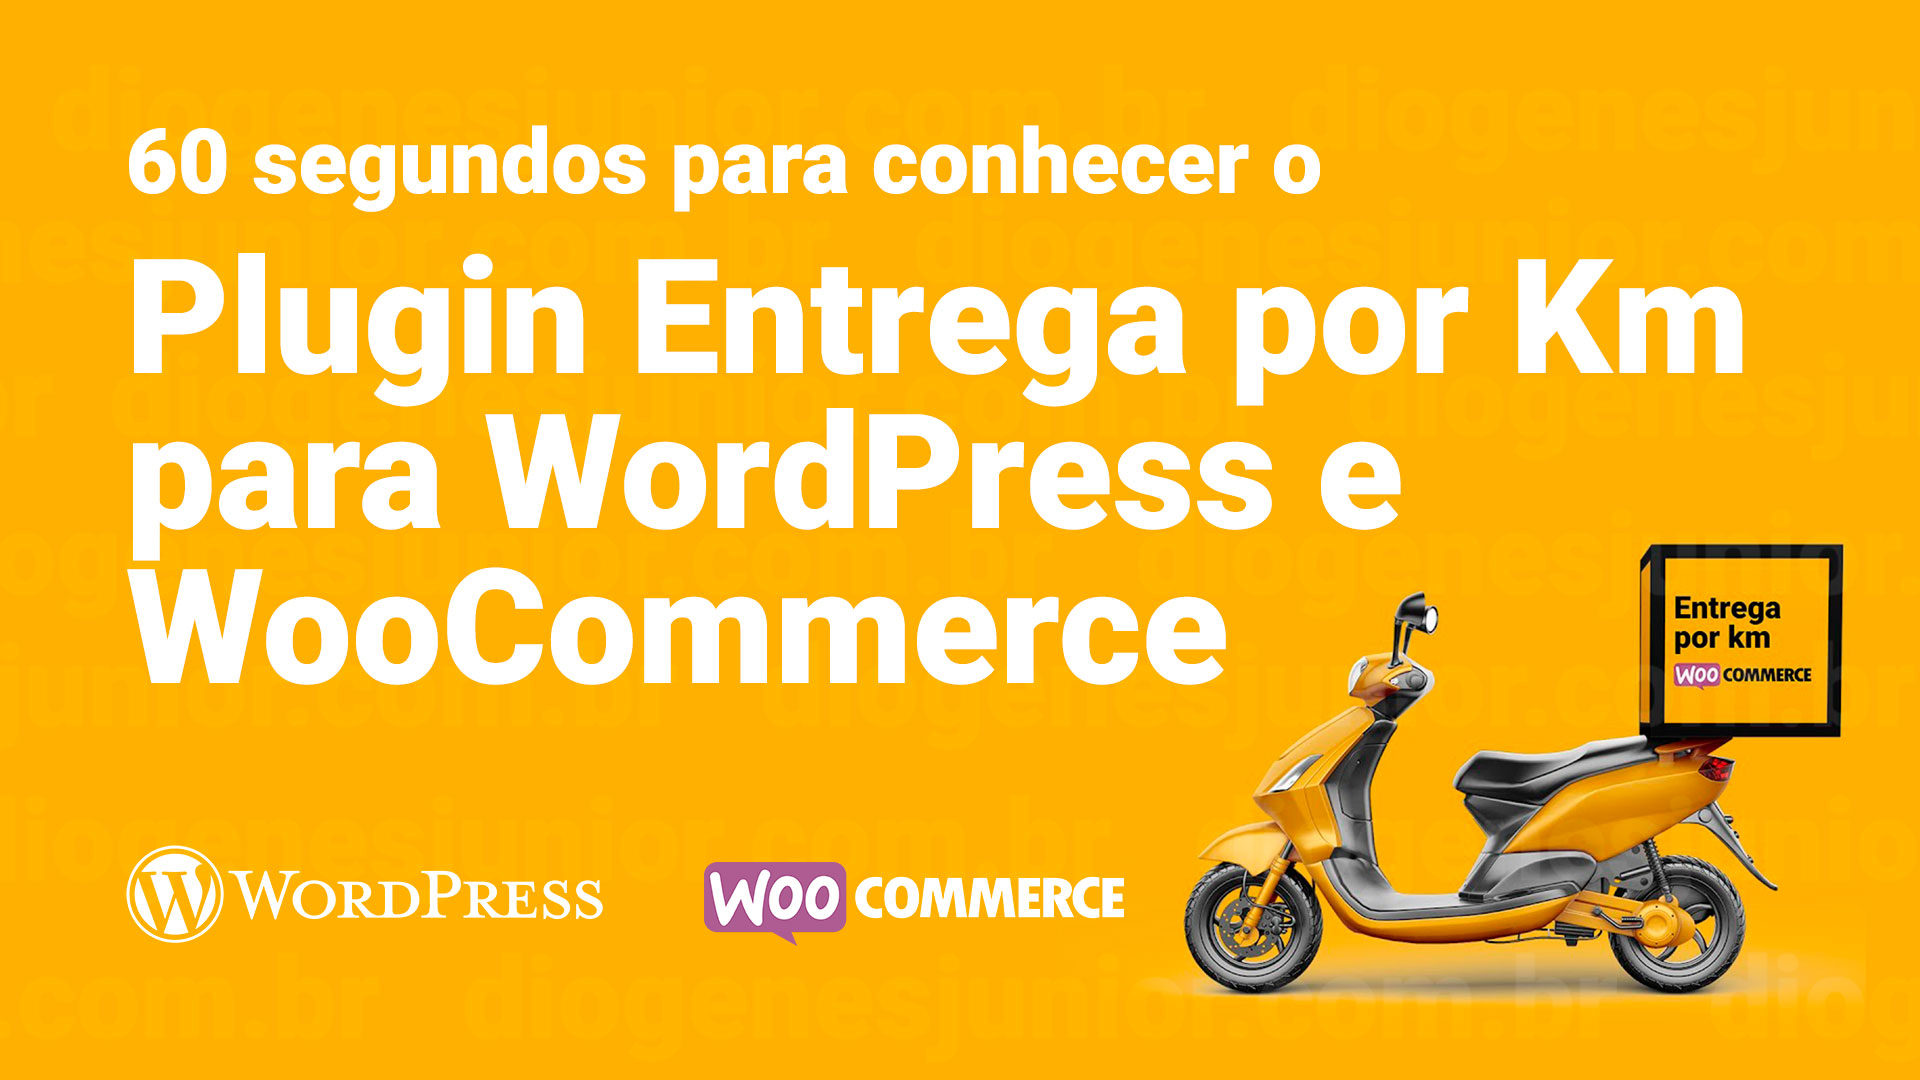 60 Segundos para conhecer o Plugin Entrega por Km para WordPress + WooCommerce